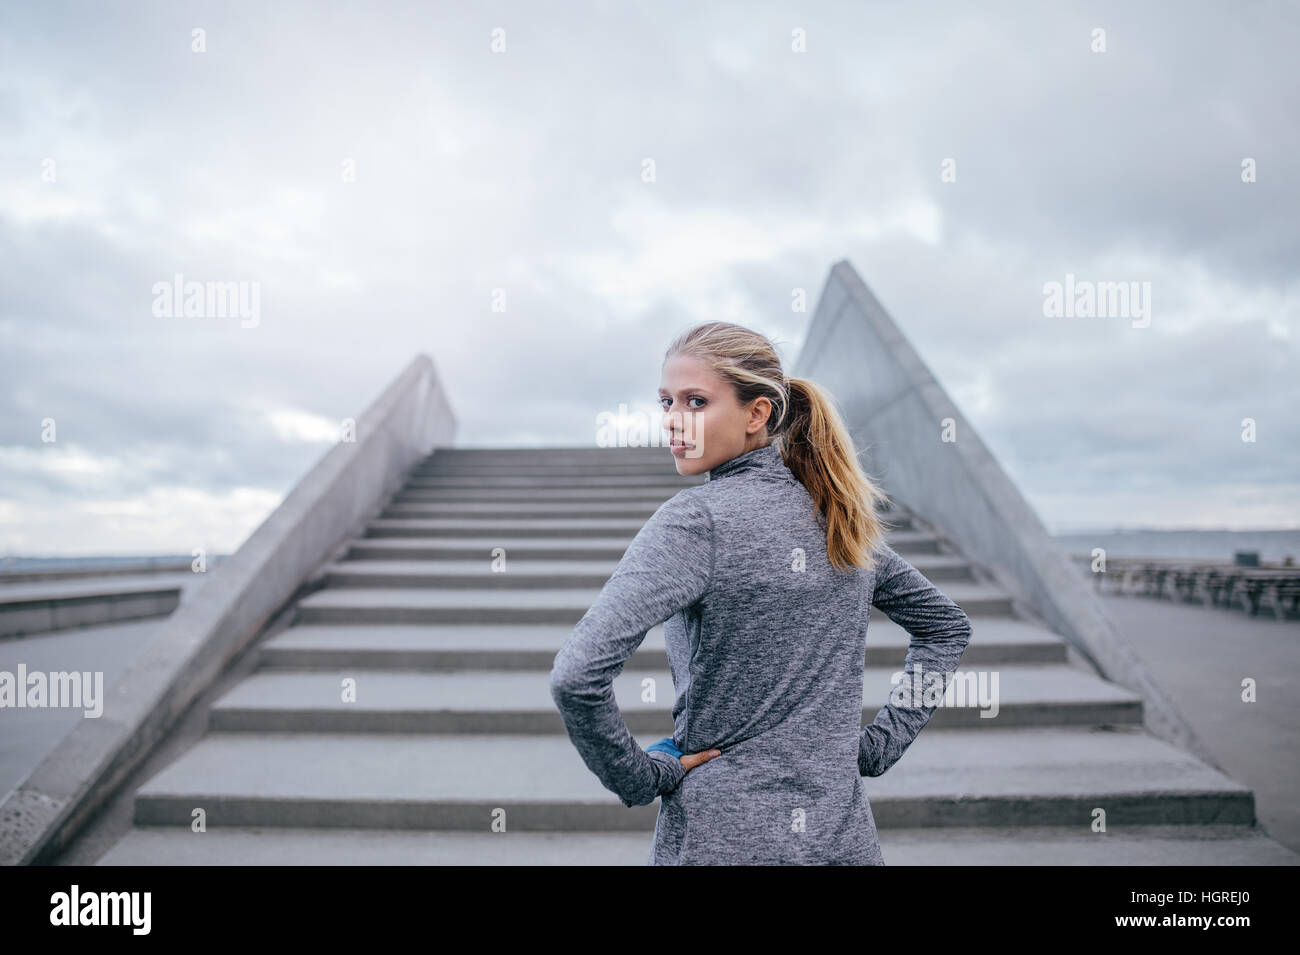 Außenaufnahme einer jungen Frau, die an einer Treppe steht und über die Schulter schaut. Fitnessmodell für Frauen bereit zum Laufen. Stockfoto